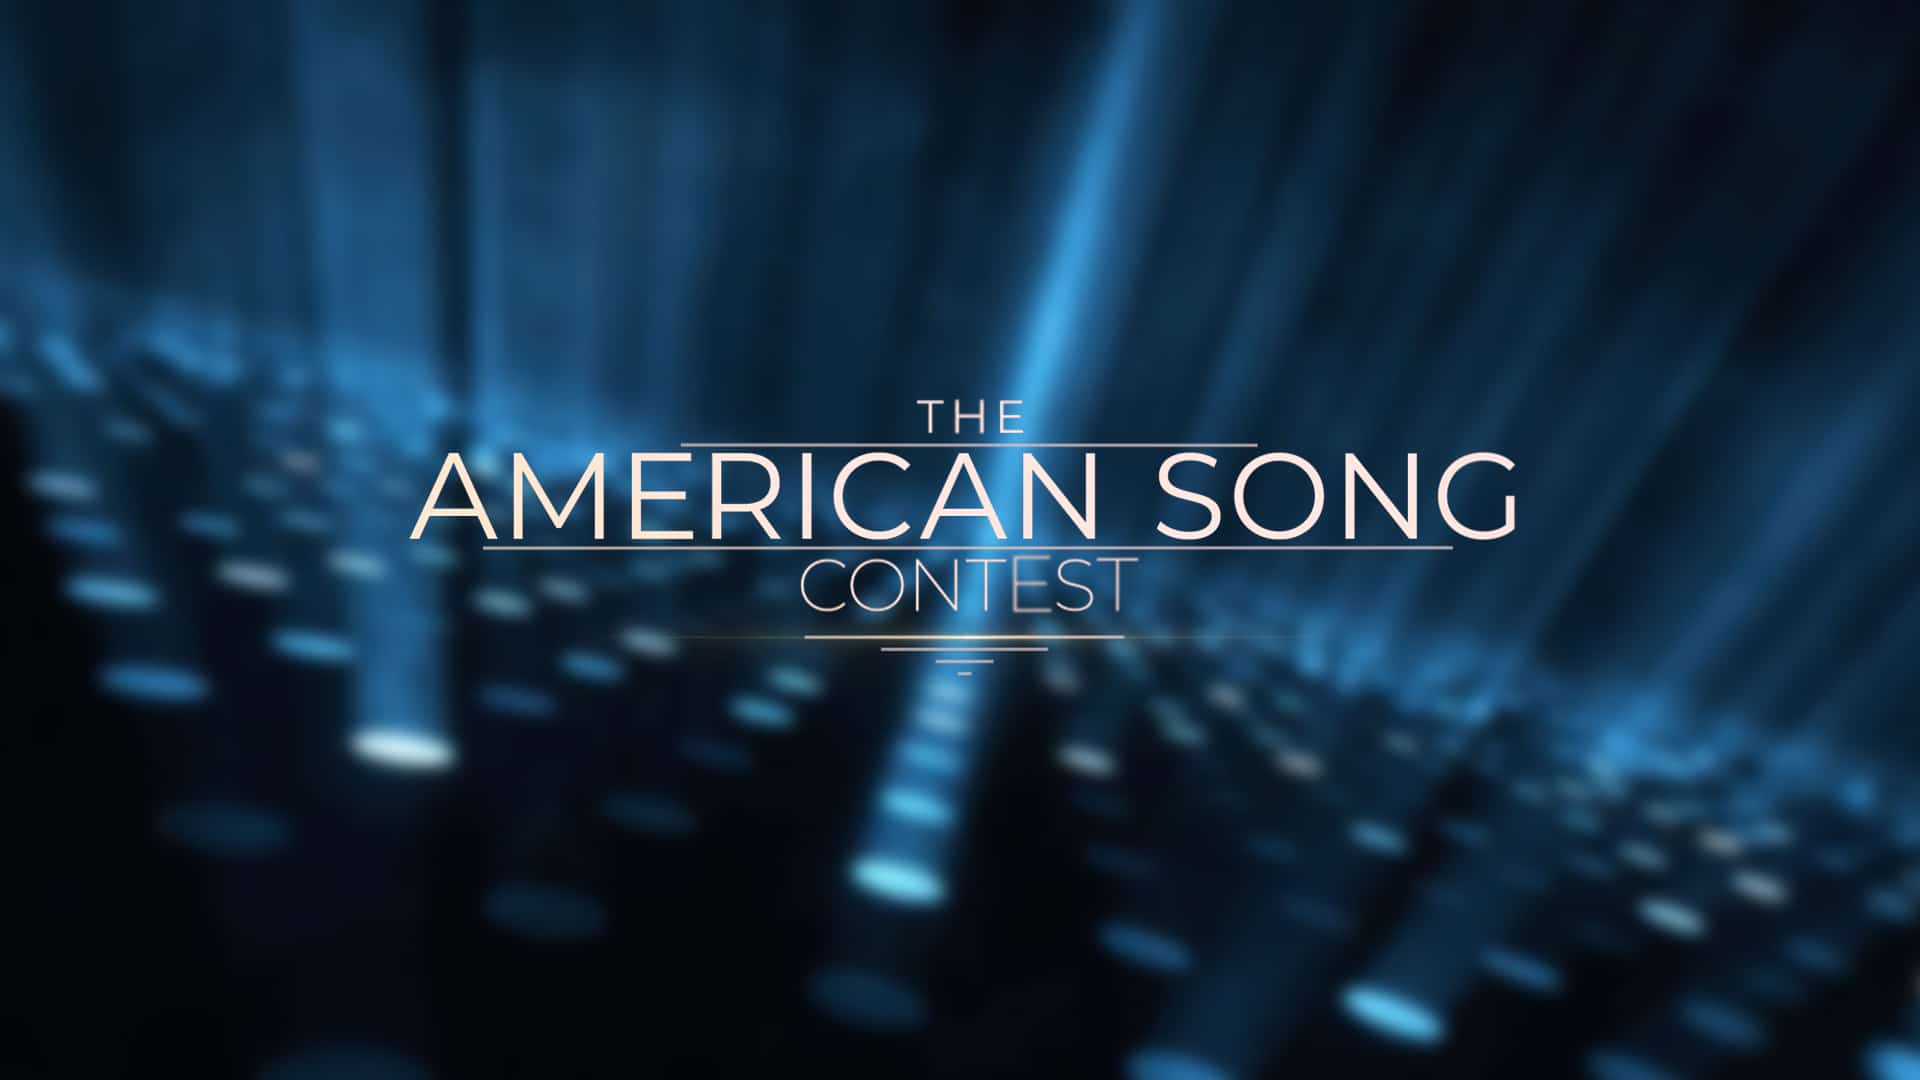 2022 márciusában indul az American Song Contest - sorozatunk első részében bemutatjuk a legfontosabbakat az amerikai verseny történetéről.